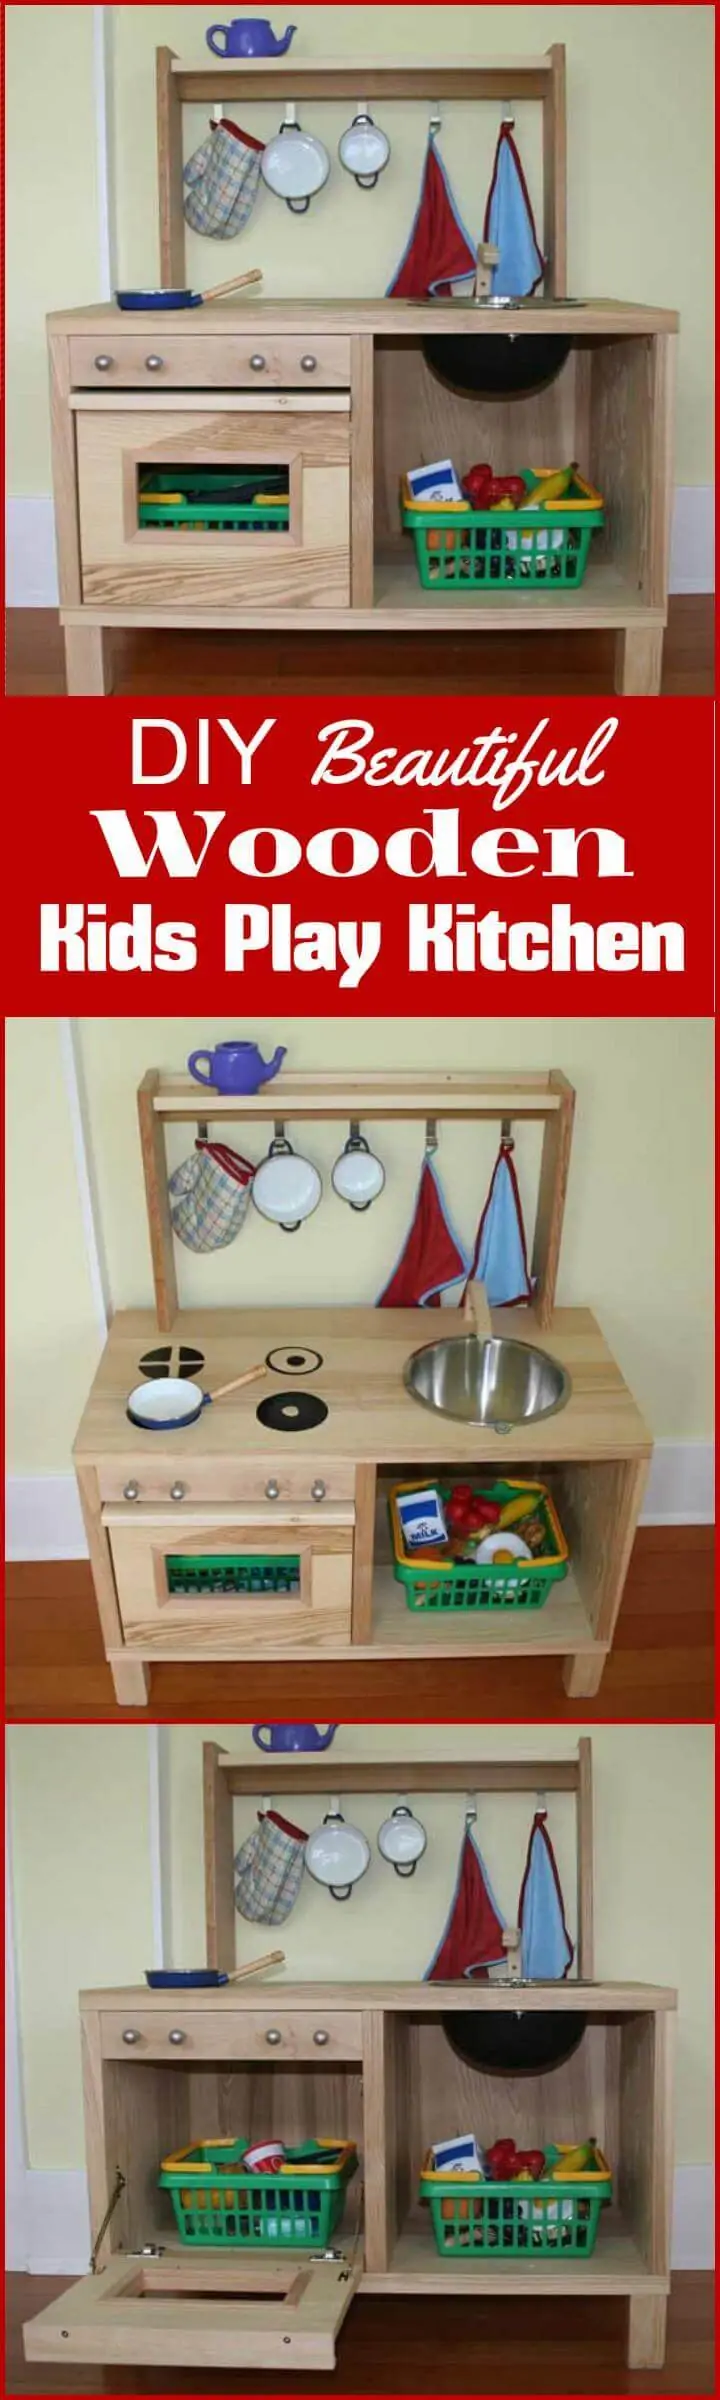 Los niños de madera caseros juegan en la cocina.